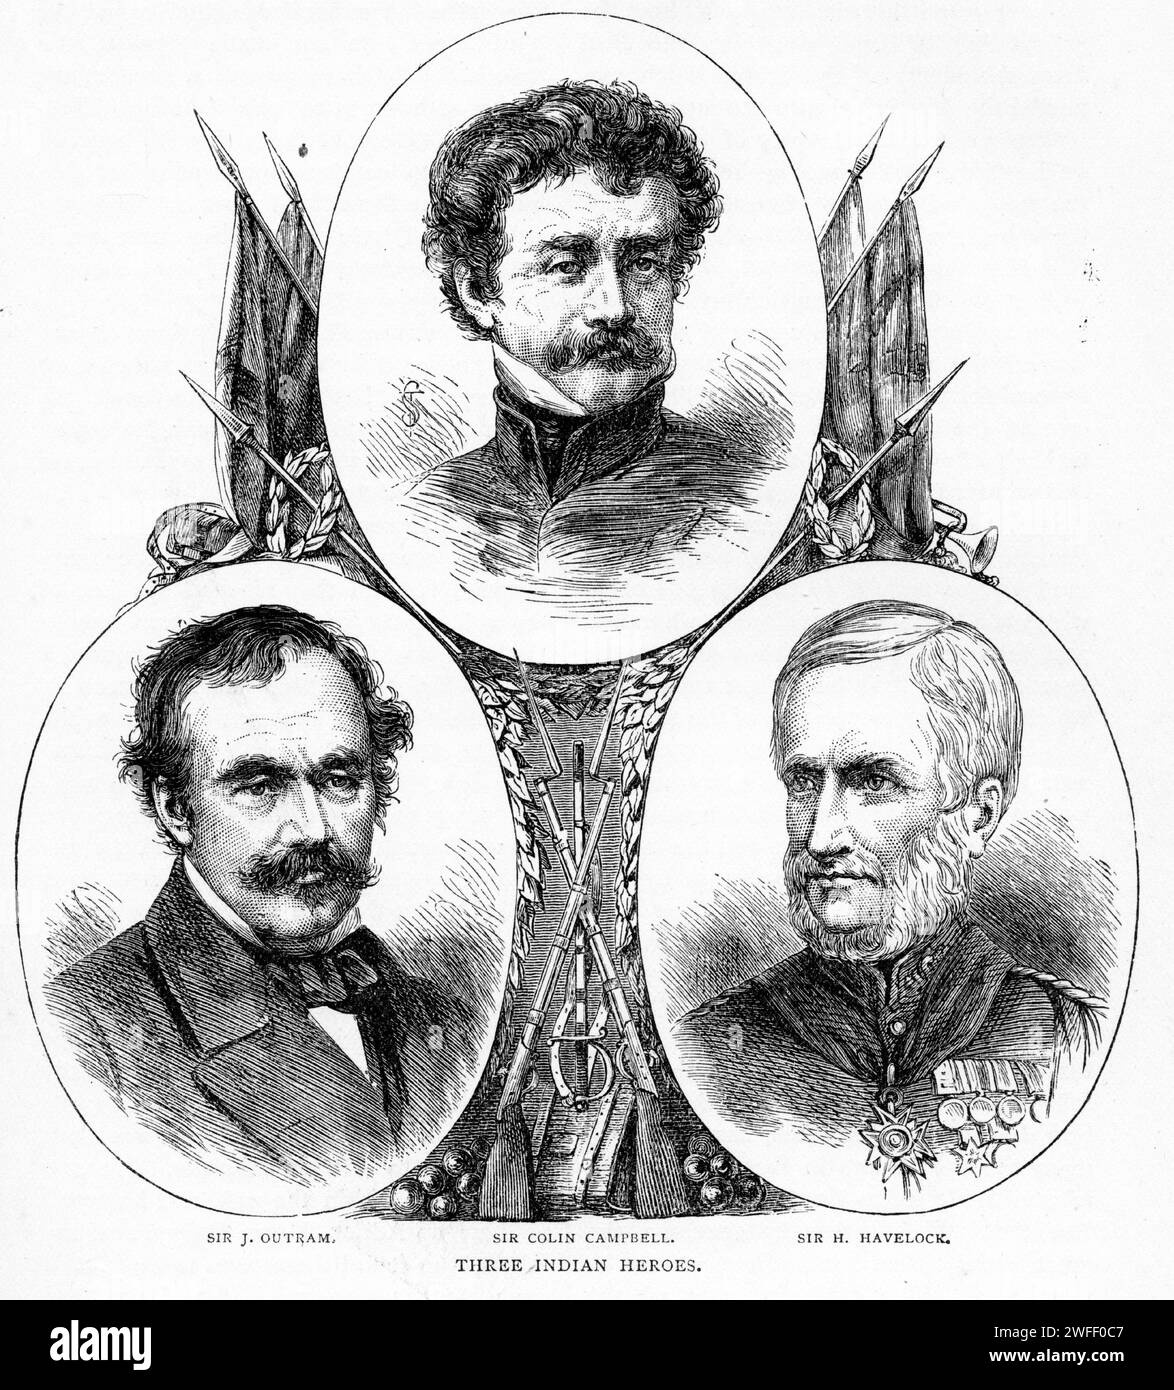 Porträt von drei britischen Helden, die sich in Indien auszeichneten: Sir James Outram, Sir Colin Campbell und Sir Henry Havelock. Veröffentlicht um 1880 Stockfoto